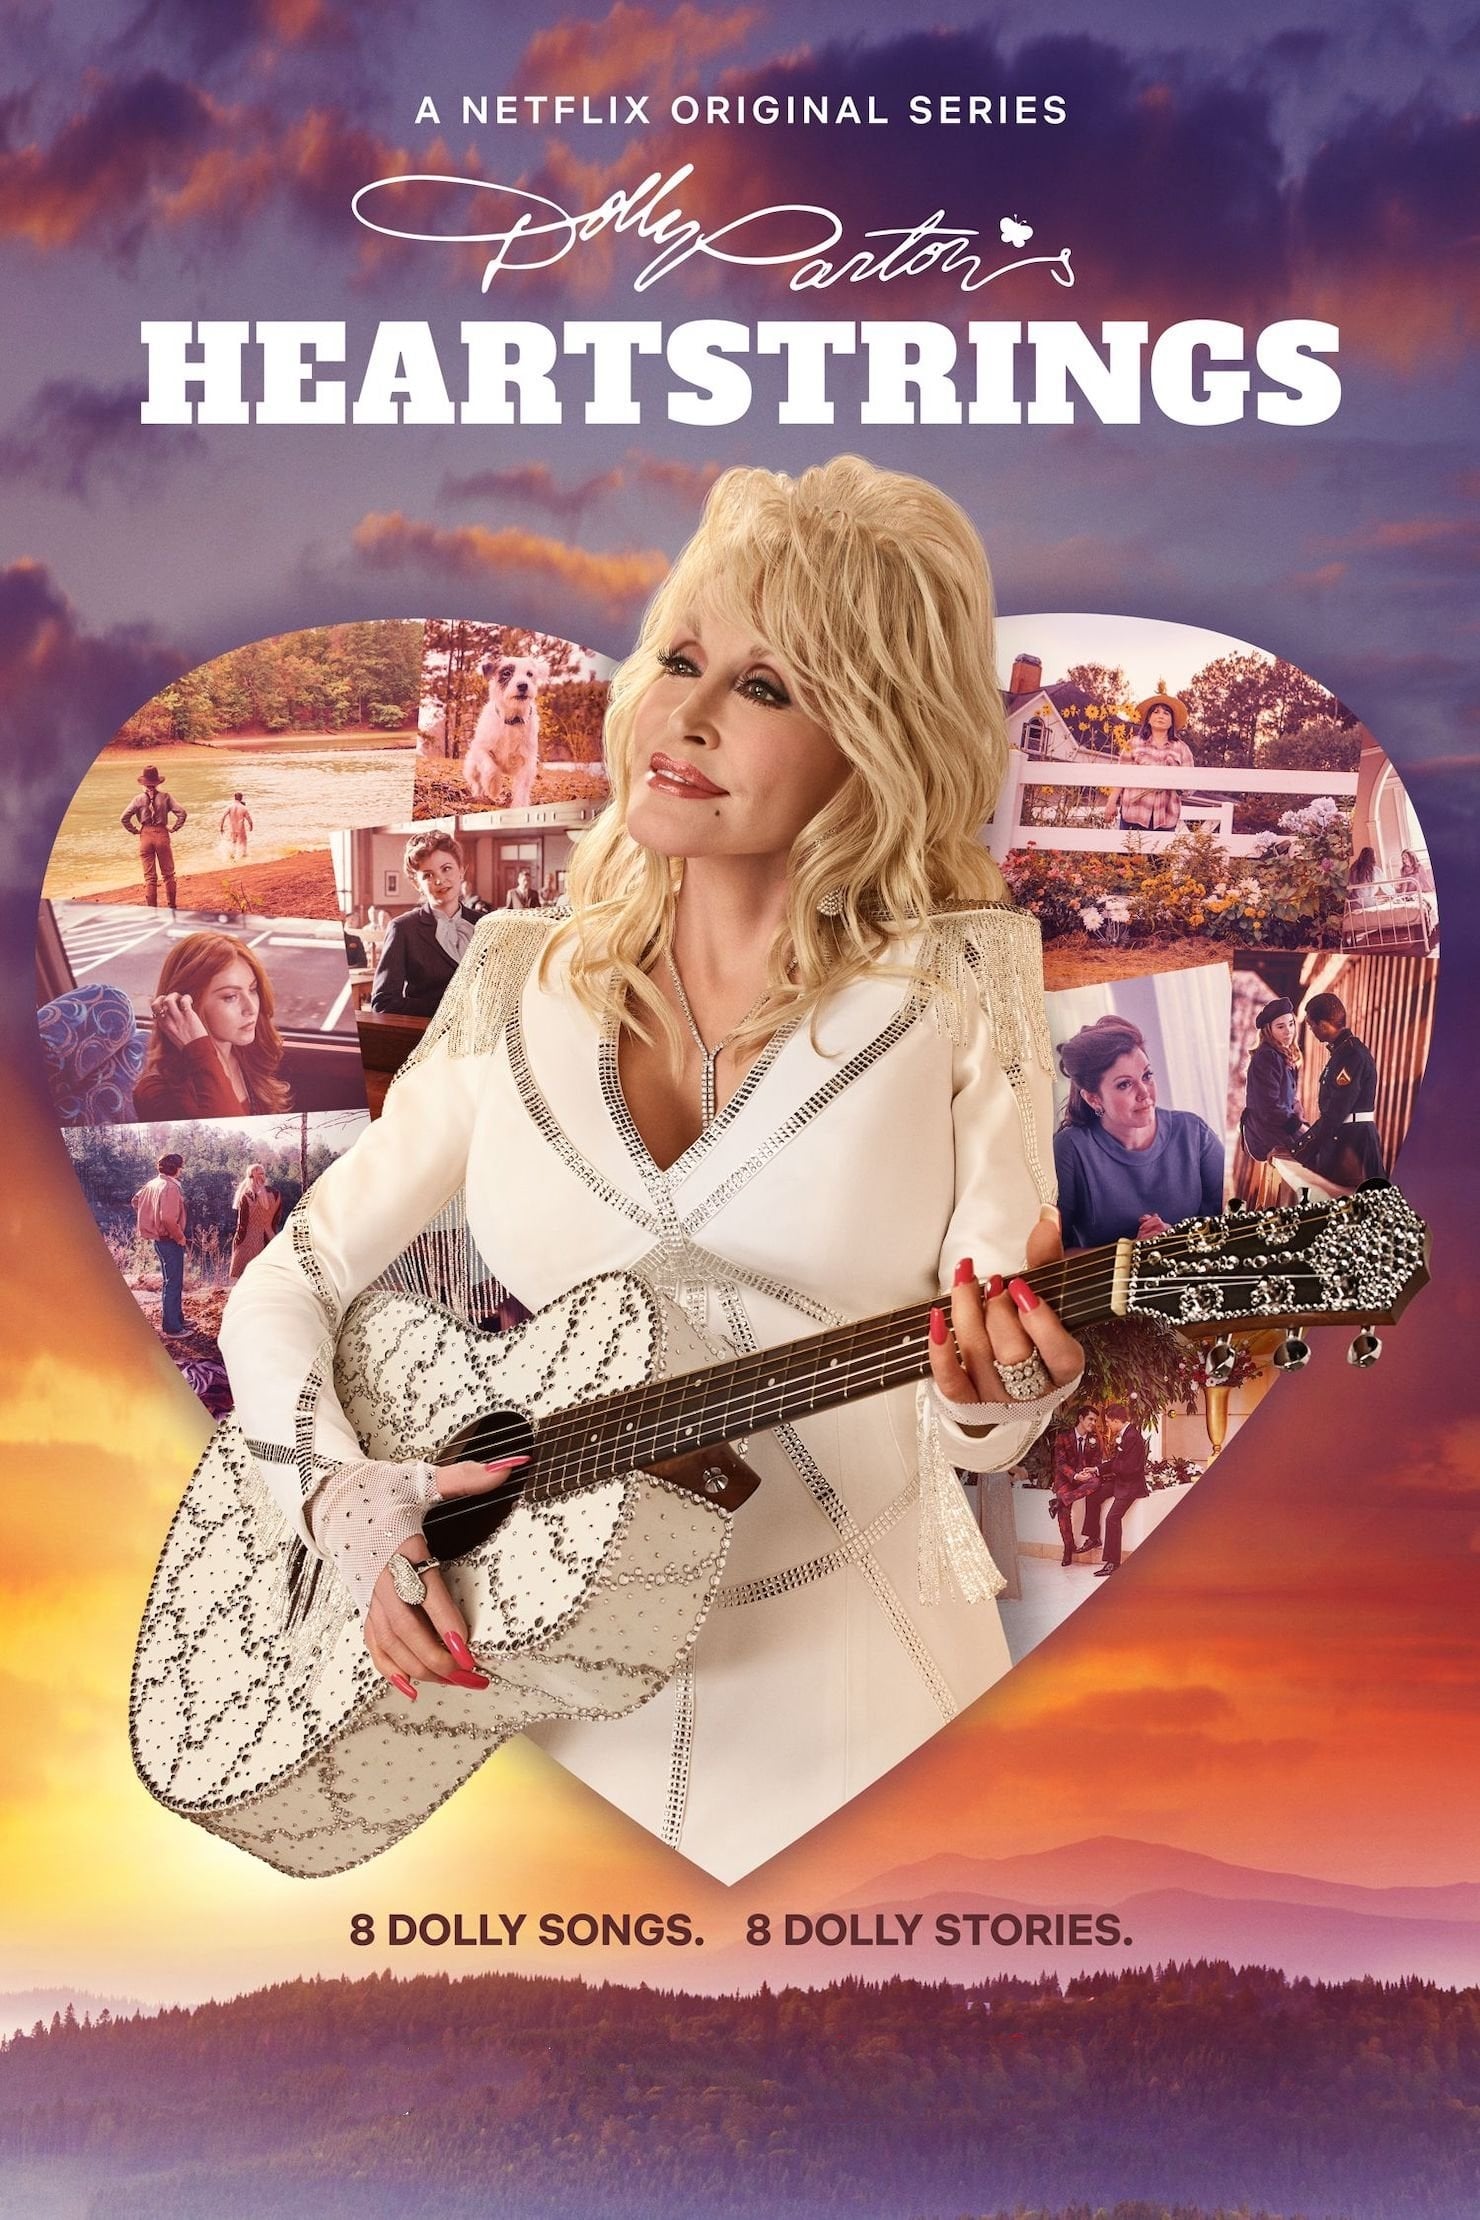 Caratula de Dolly Parton's Heartstrings (Dolly Parton: Acordes del corazón) 